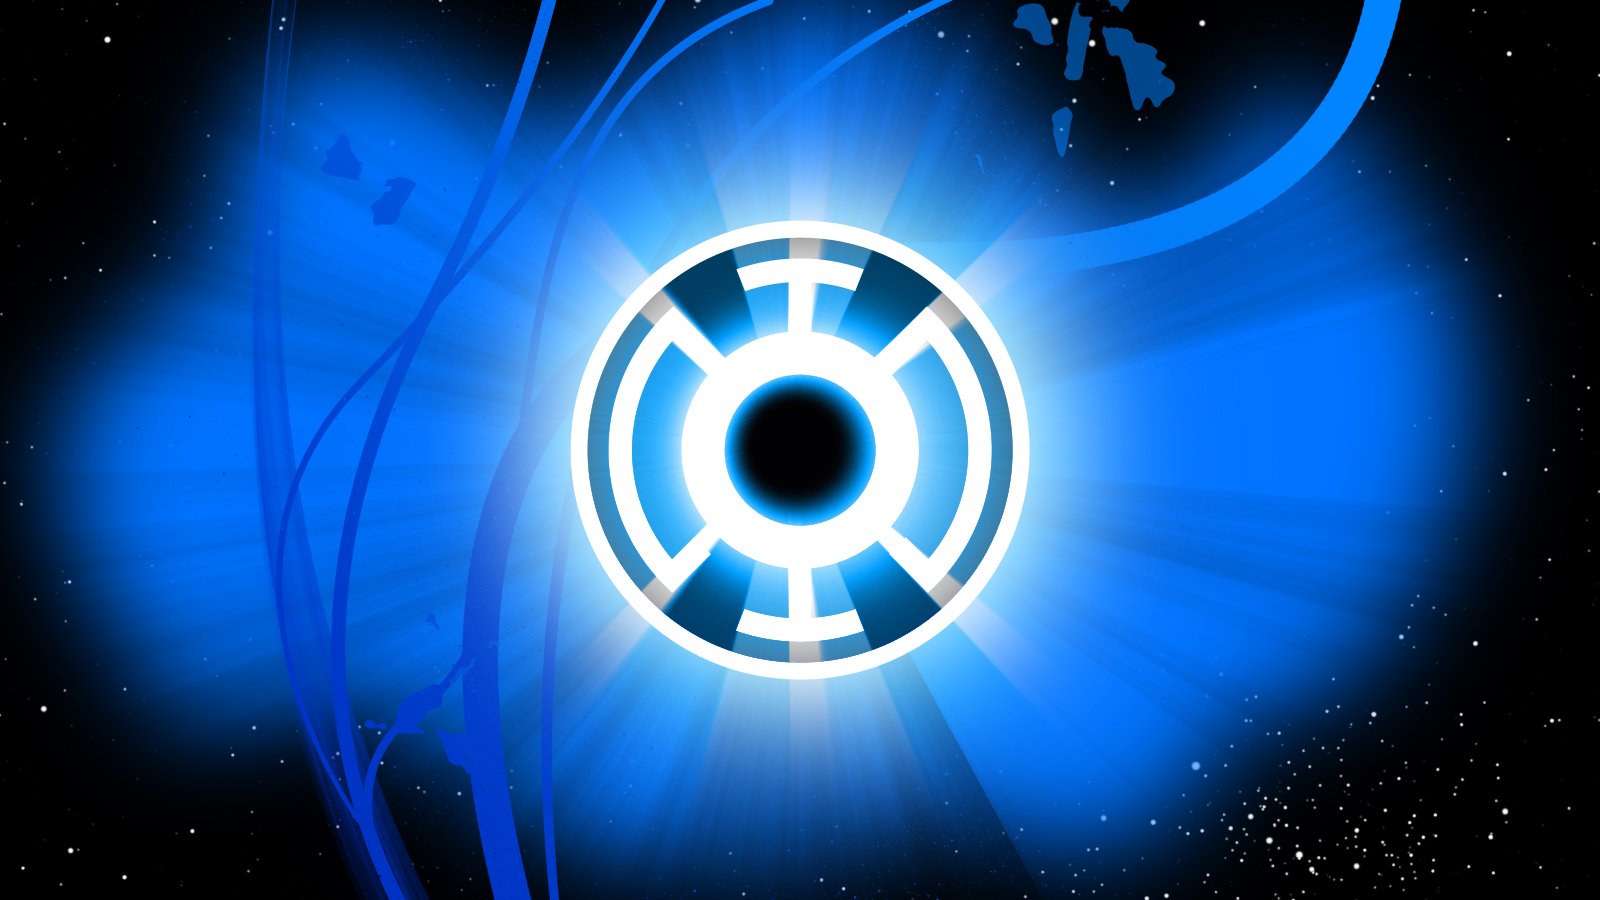 Image   Blue Lantern Corps Wallpaper by Asabru88jpg   Green Lantern 1600x900